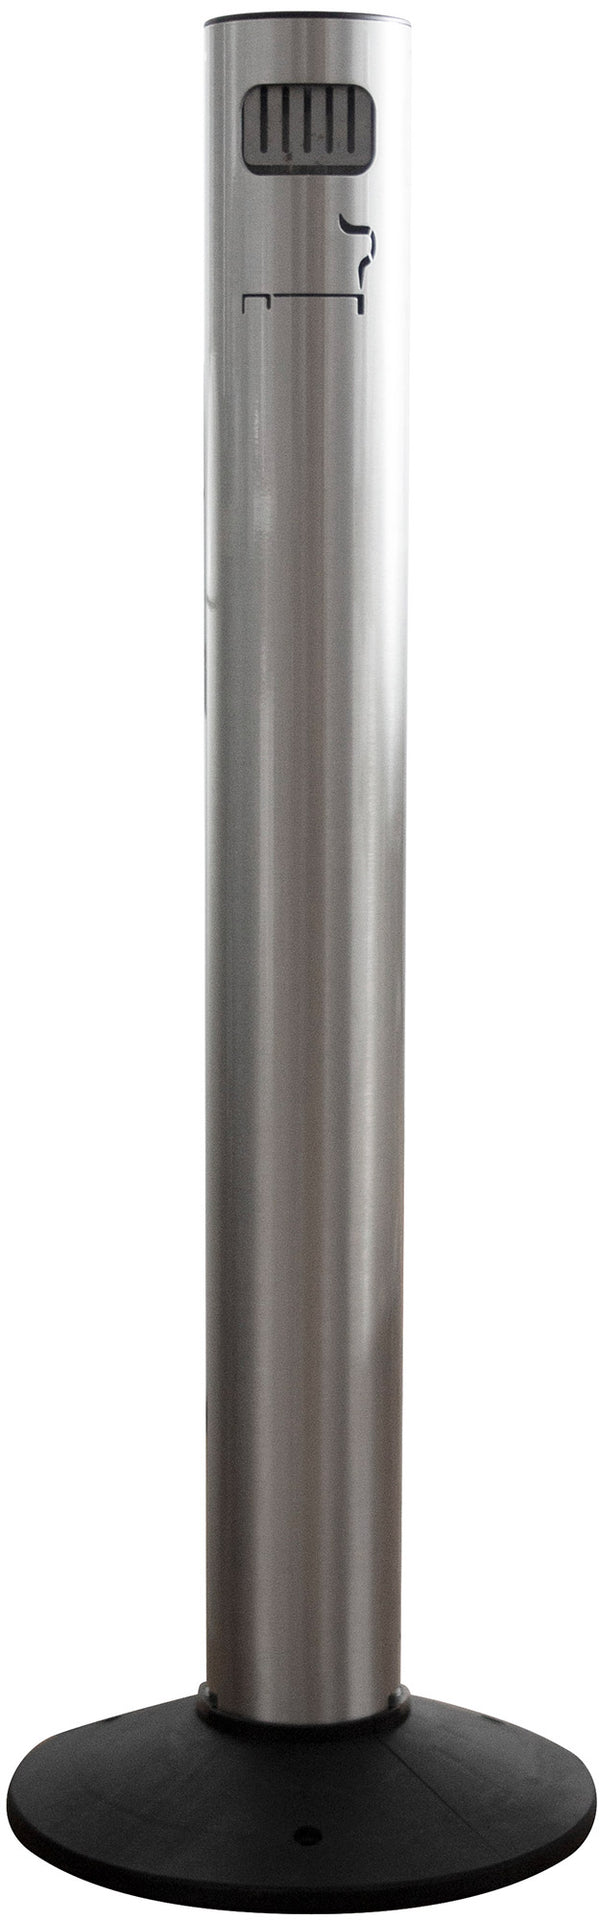 Posacenere a Colonna Ø11,7xh105 cm in Alluminio con Contenitore Interno Argento acquista